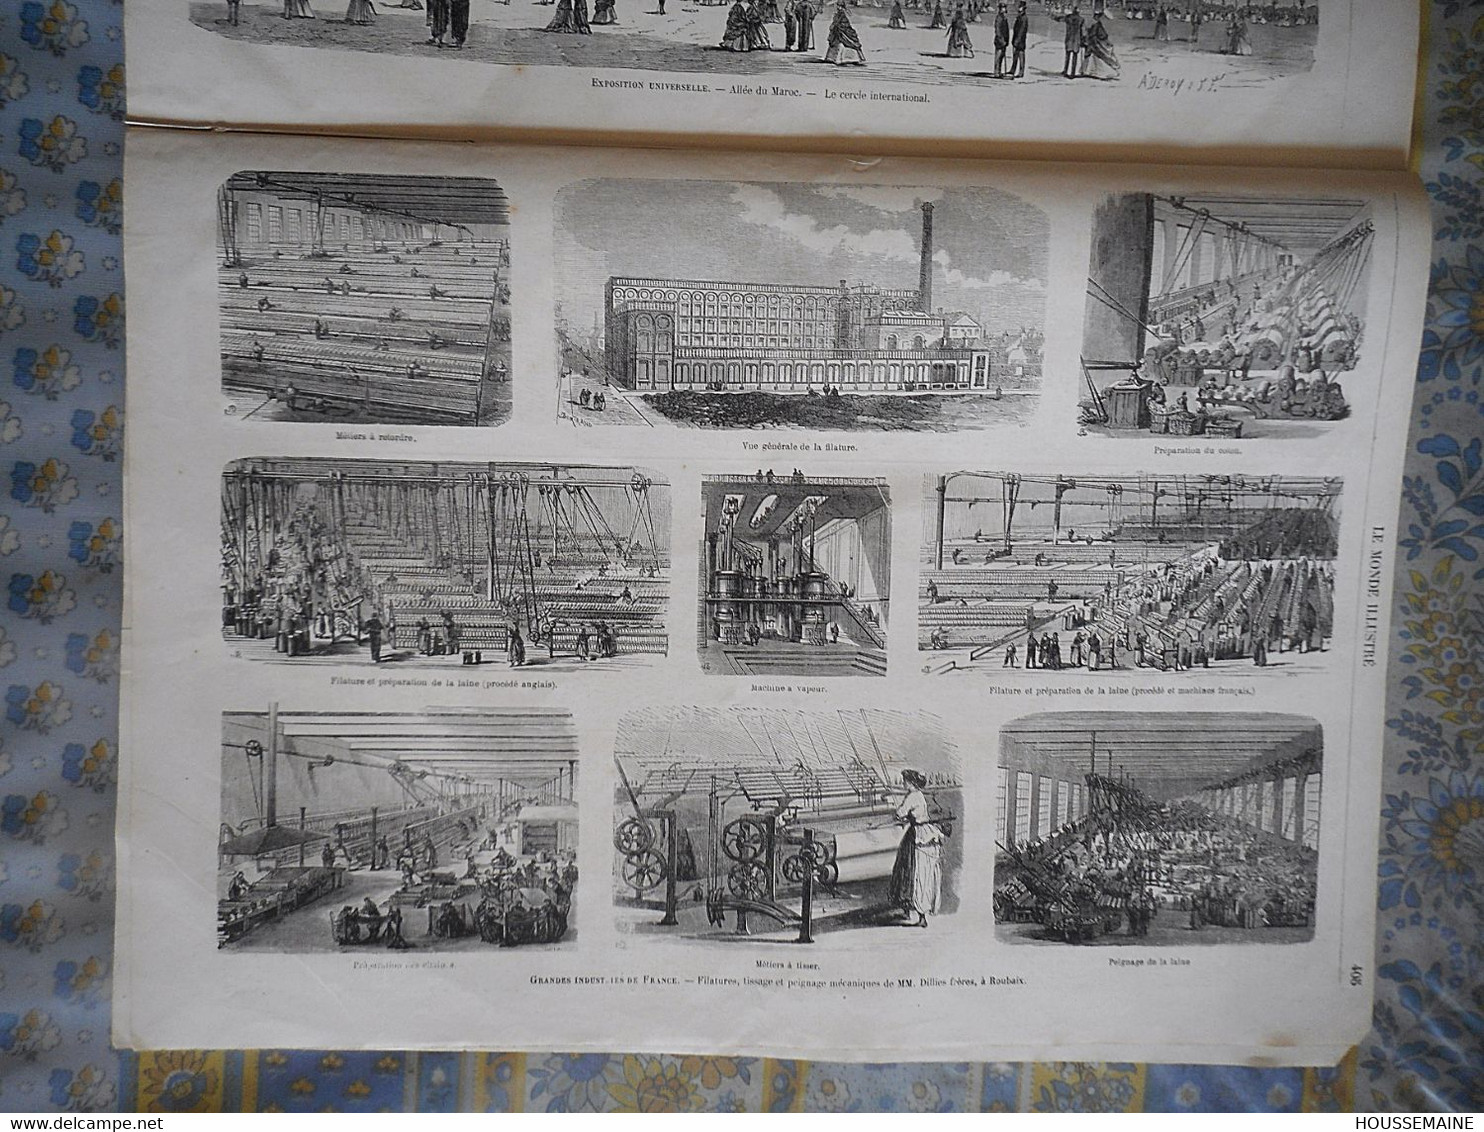 LE MONDE ILLUSTRE 28/12/1867 DUC DE LUYNES CHATEAU DAMPIERRE LONDRES EXPOSITION MAROC LONDRES ROUBAIX DILLIES TISSAGE